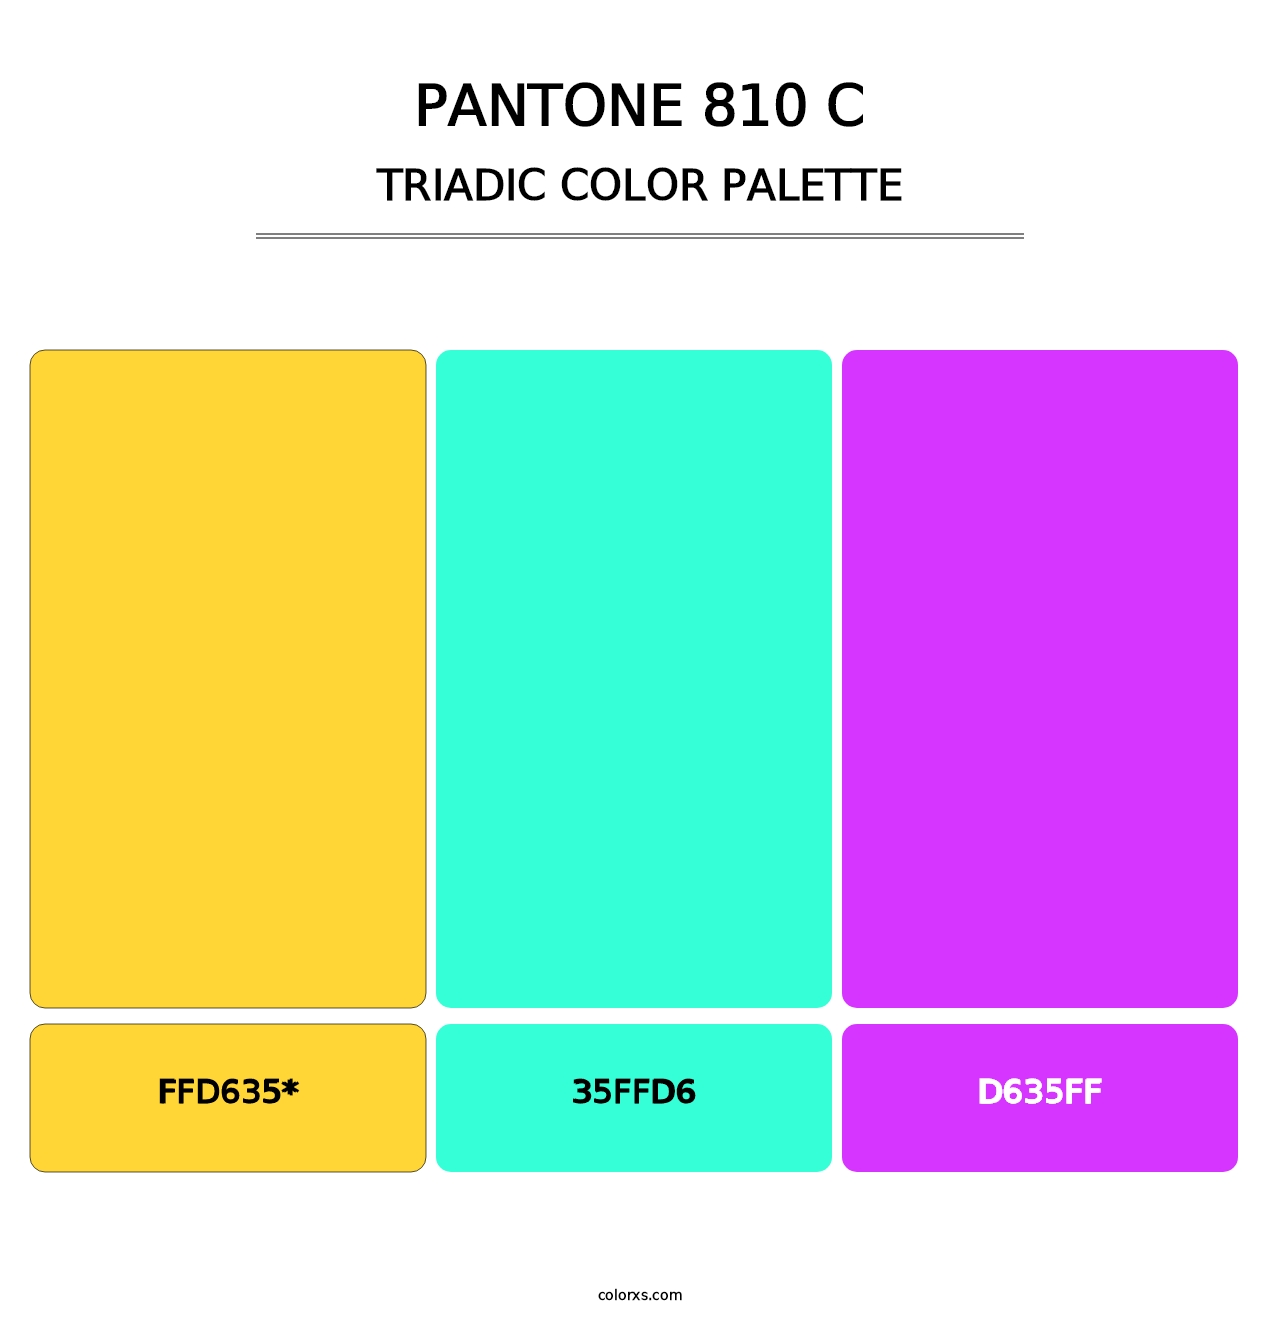 PANTONE 810 C - Triadic Color Palette